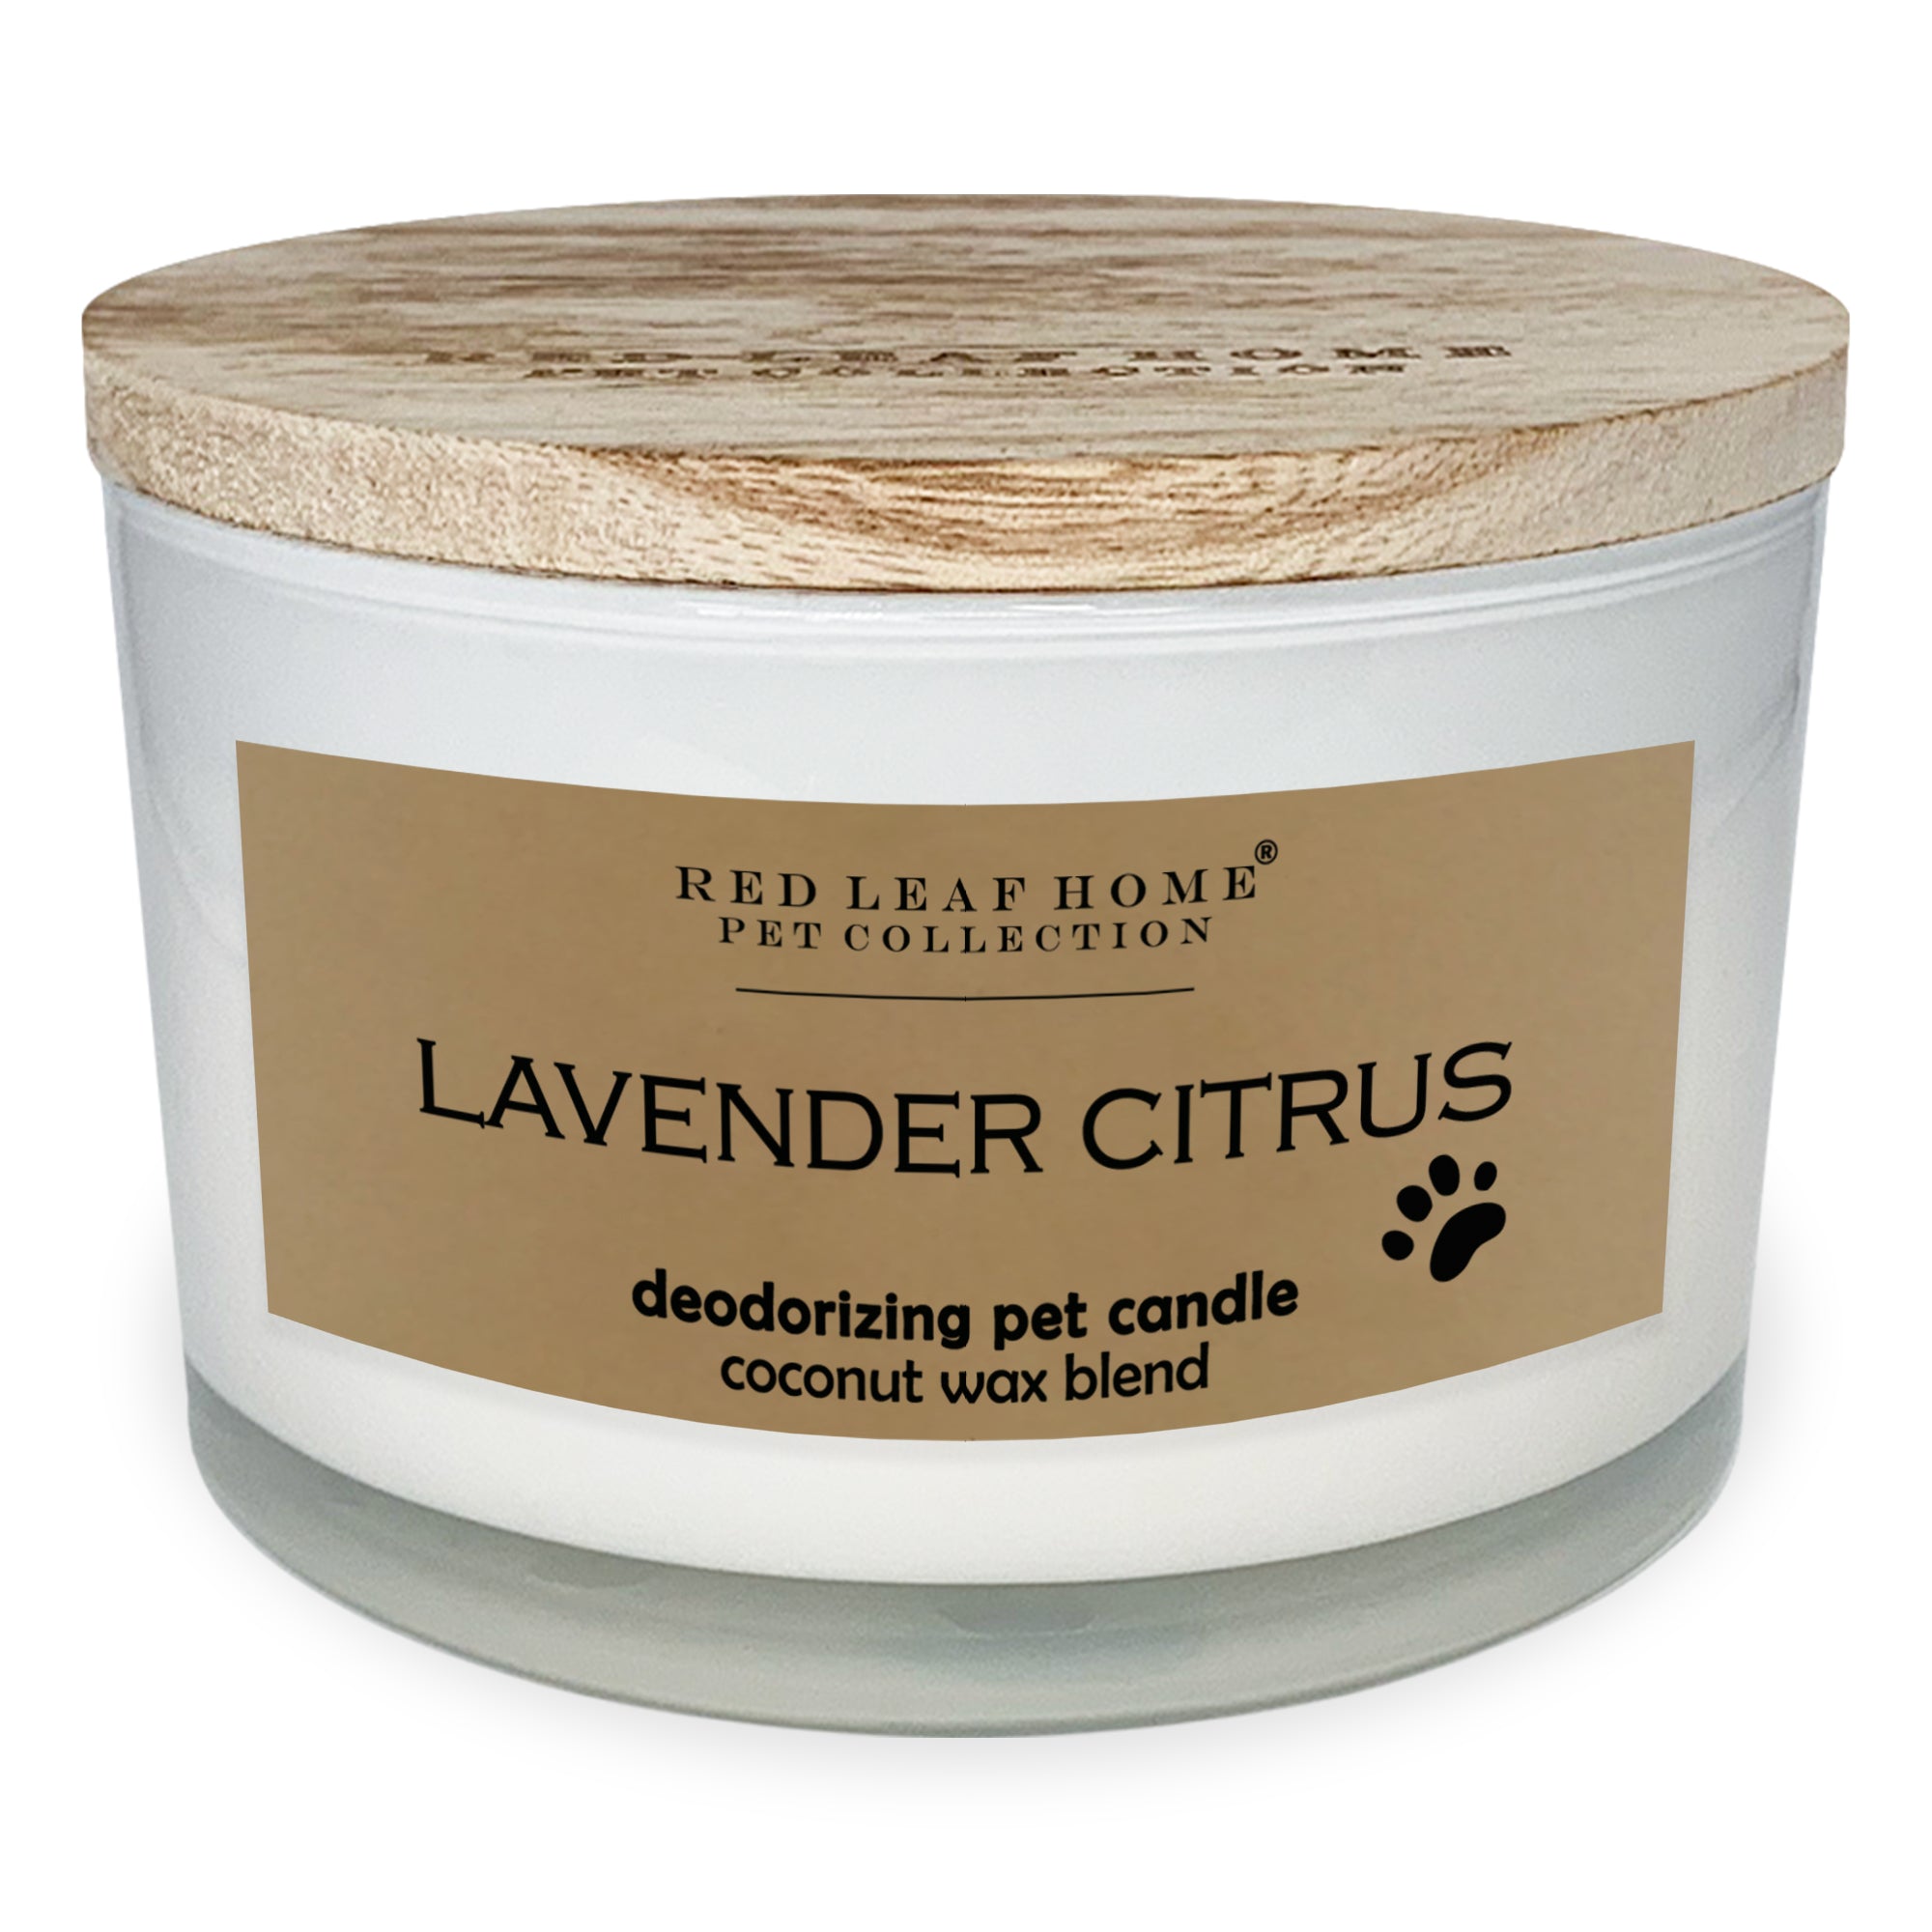 Lavender Citrus Pet Deodorizing